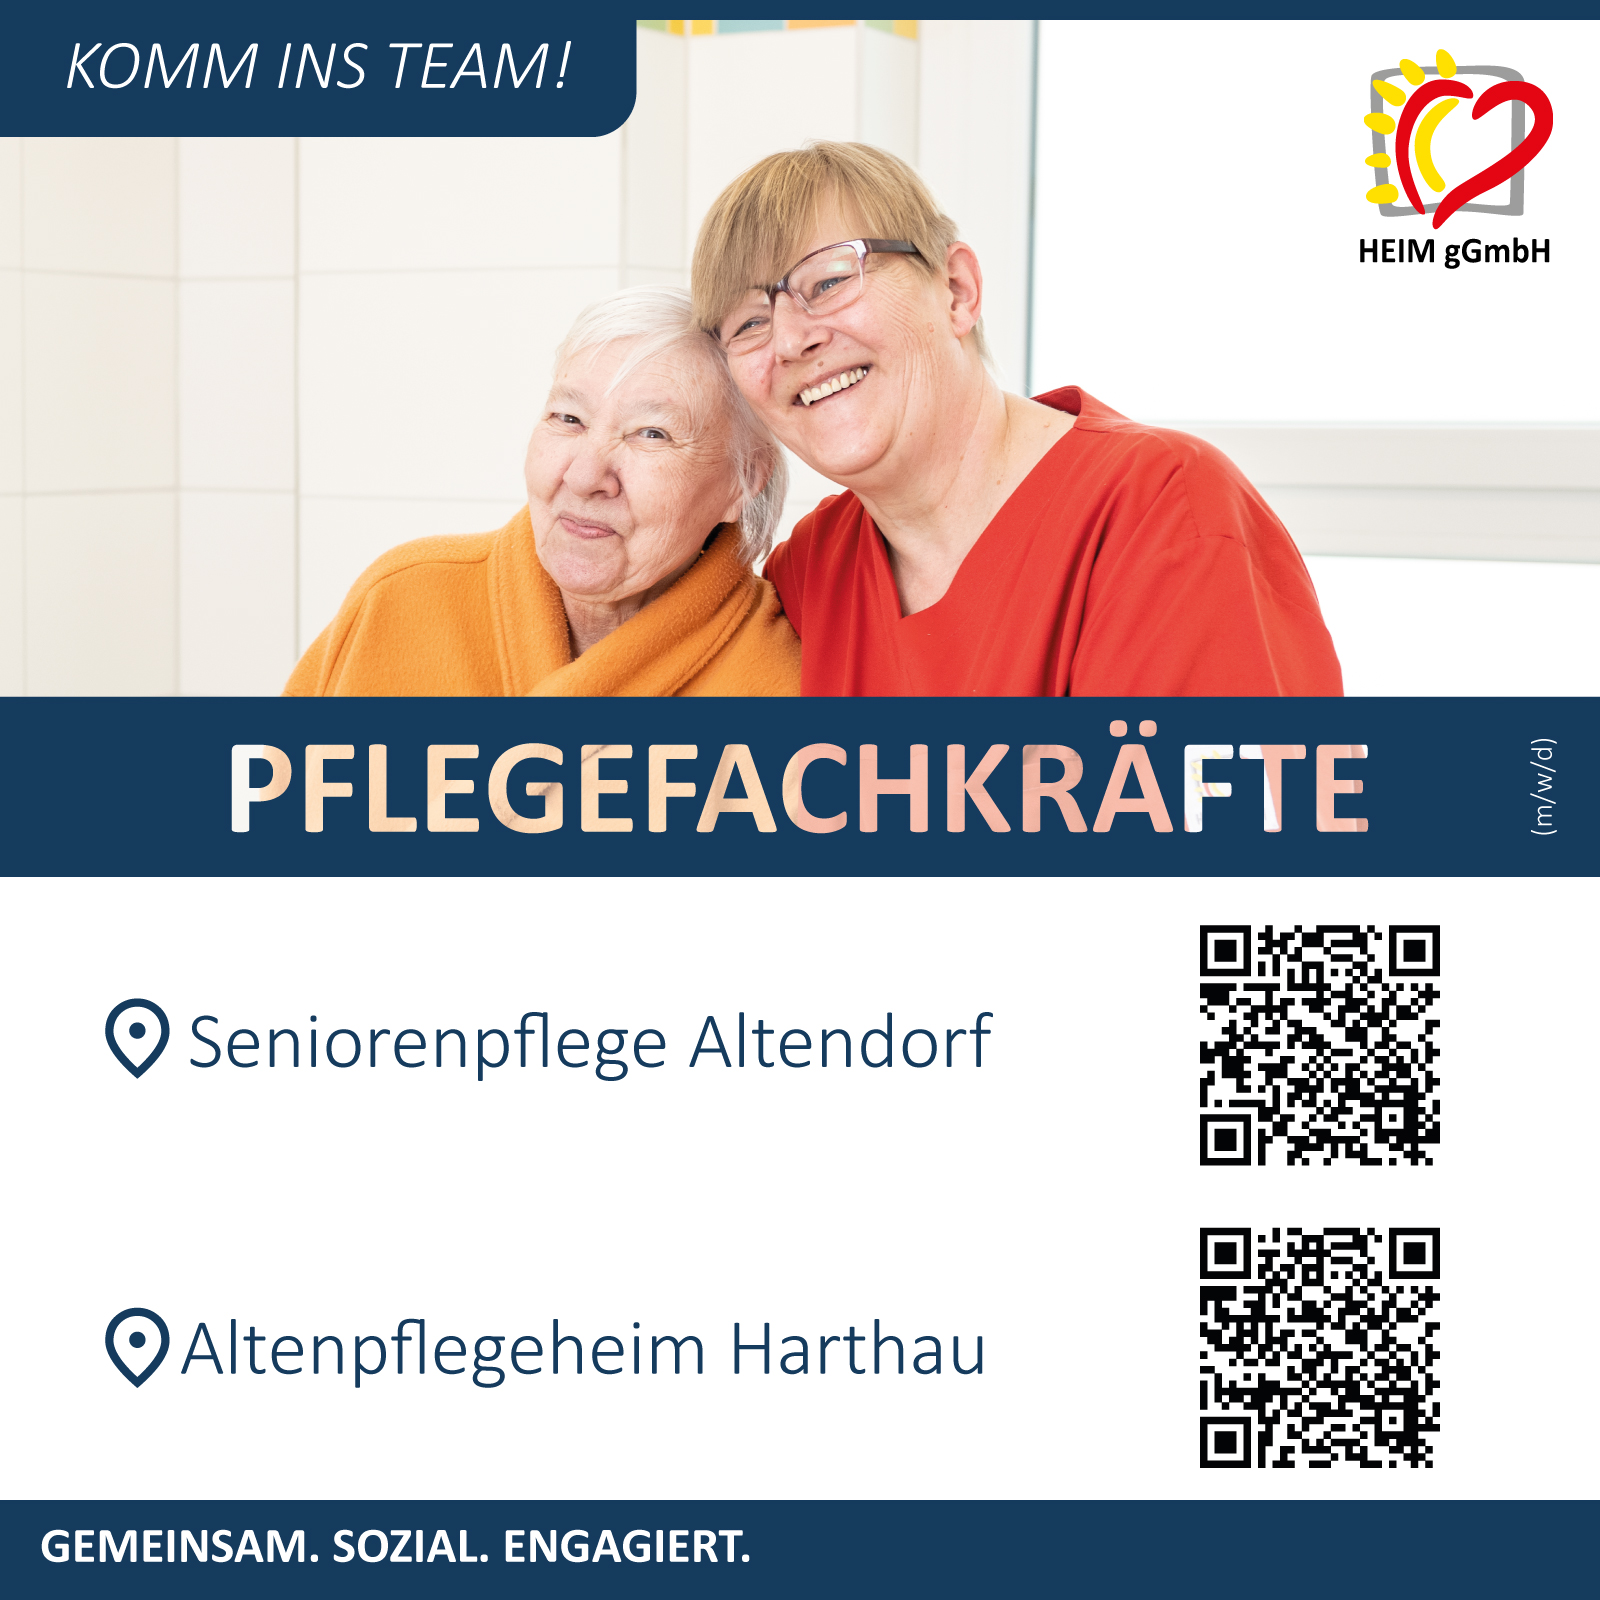 Stellenangebot in Chemnitz bei der HEIM gGmbH - Pflegefachkräfte (m/w/d) für unsere Seniorenpflege Altendorf und unser Altenpflegeheim Harthau